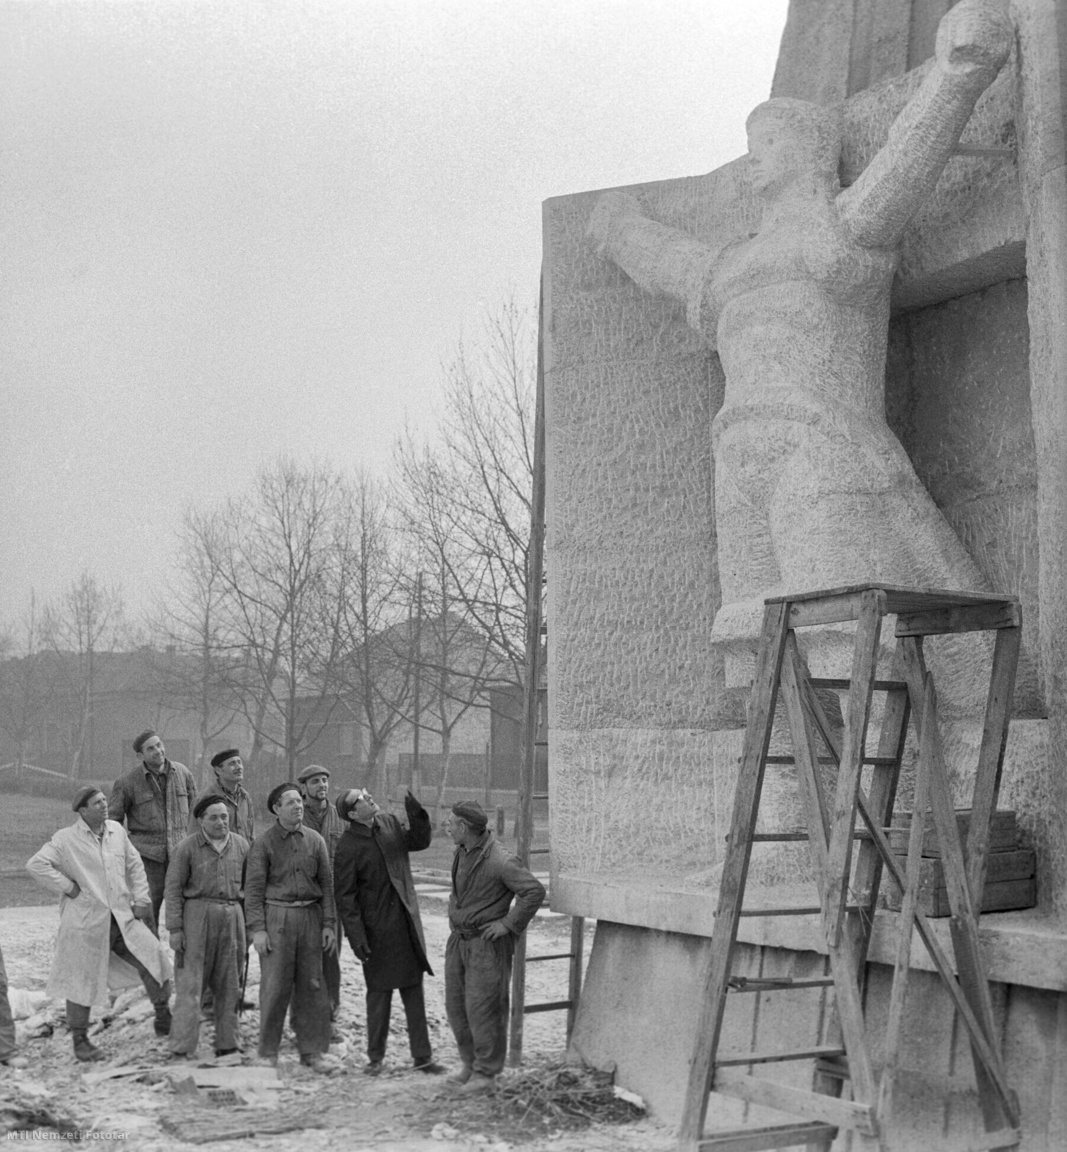 Budapest, 1965. március 23. Vilt Tibor szobrászművész (j2) a kőszobrászokkal egyeztet a Jánosy György építésszel közösen létrehozott Felszabadulási emlékmű (Szovjet hősi emlékmű) című alkotása végső munkálatain a fővárosi 20. kerületében a Hősök terén. A nyolc méter magas emlékmű architektúráját és a négy méteres mészkő szobrot a Képzőművészeti Kivitelező Vállalat kőszobrászai a helyszínen faragták és április 3-án avatják a fel, hazánk felszabadulásának jubileumi ünnepsége keretében.